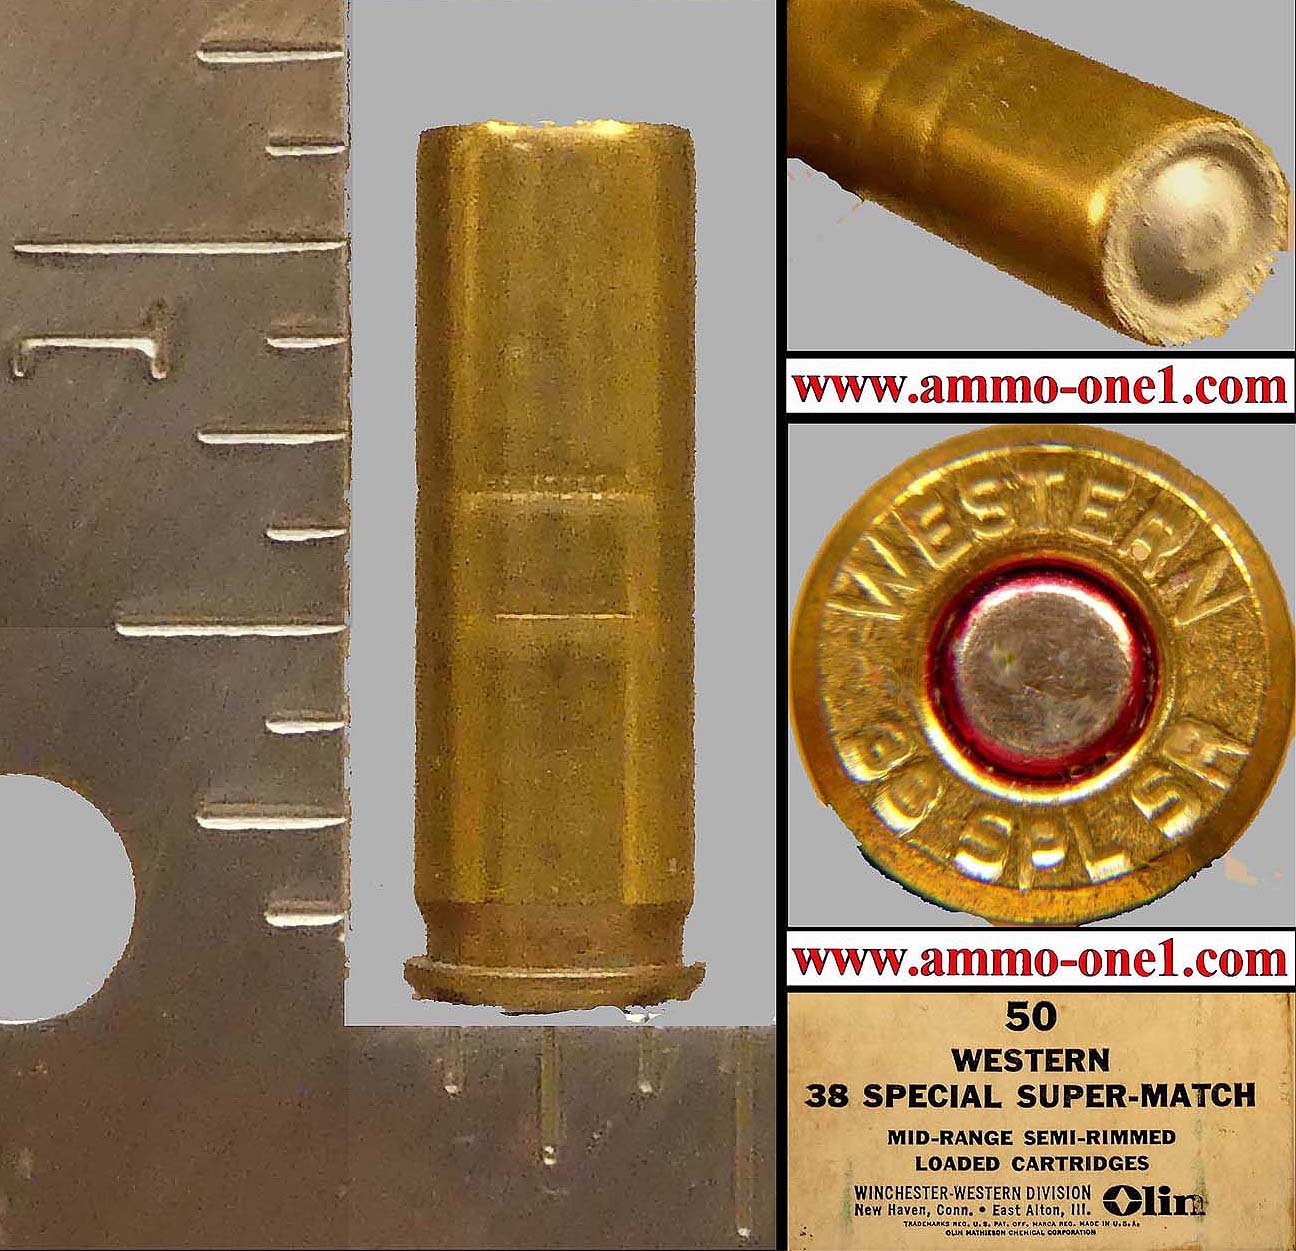 .38 AMU by Western Cartridge Co., One Cartridge not a Box! - Ammo-One1